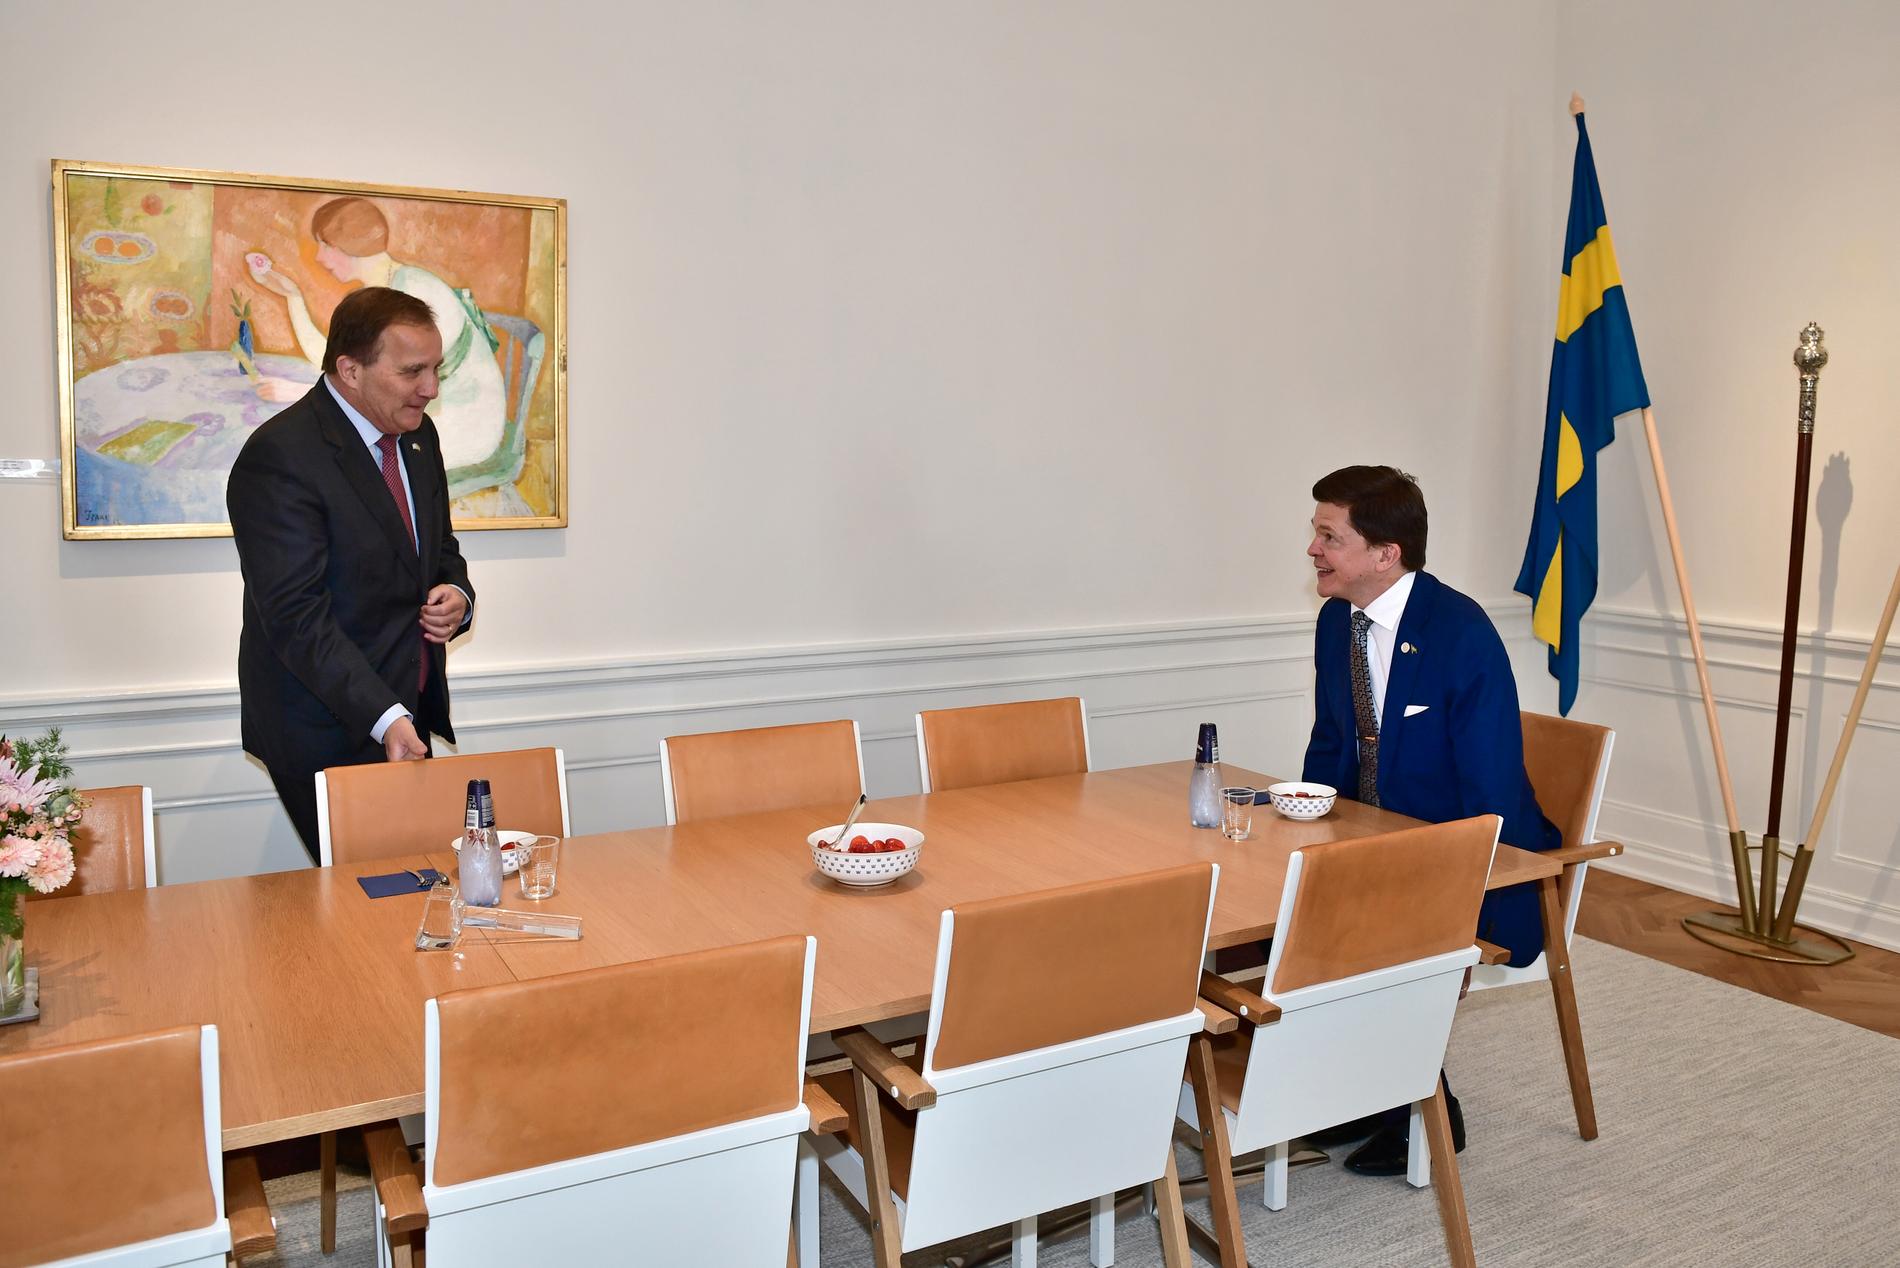 Statsminister Stefan Löfven mötte under tisdagen riksdagens talman Andréas Norlén för att diskutera regeringsbildning i den så kallade talmansrundan. 